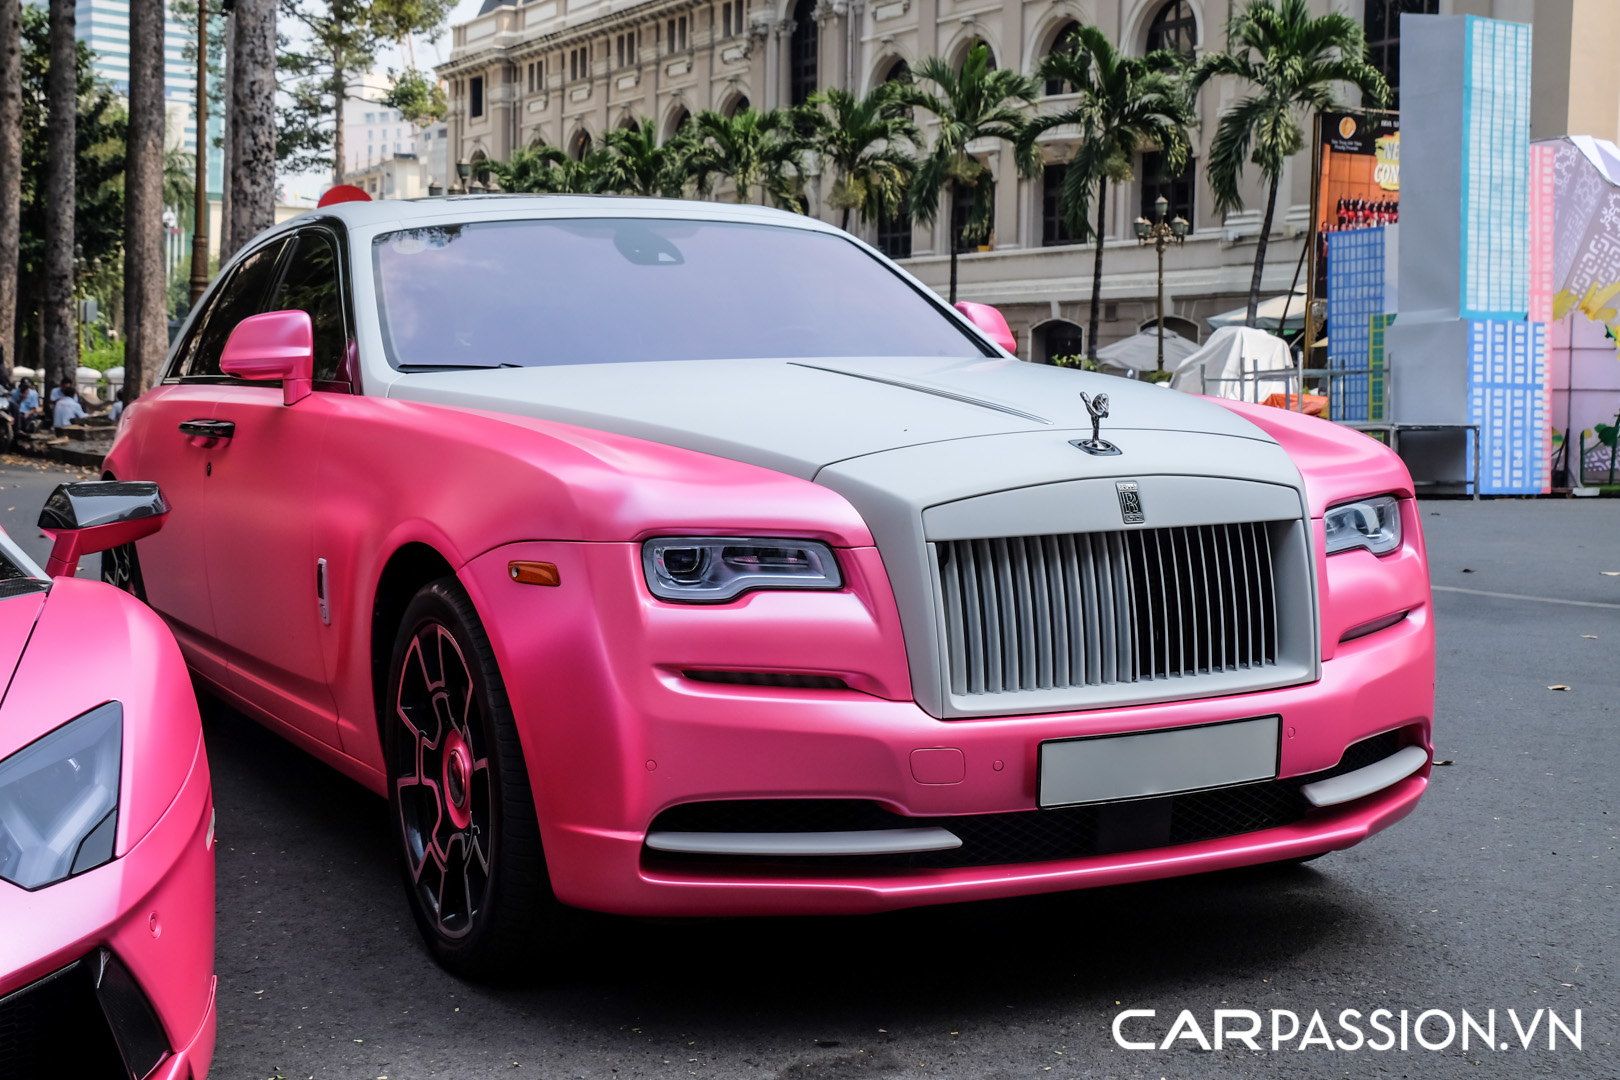 Chiêm ngưỡng chiếc RollsRoyce Phantom EWB màu hồng độc đáo